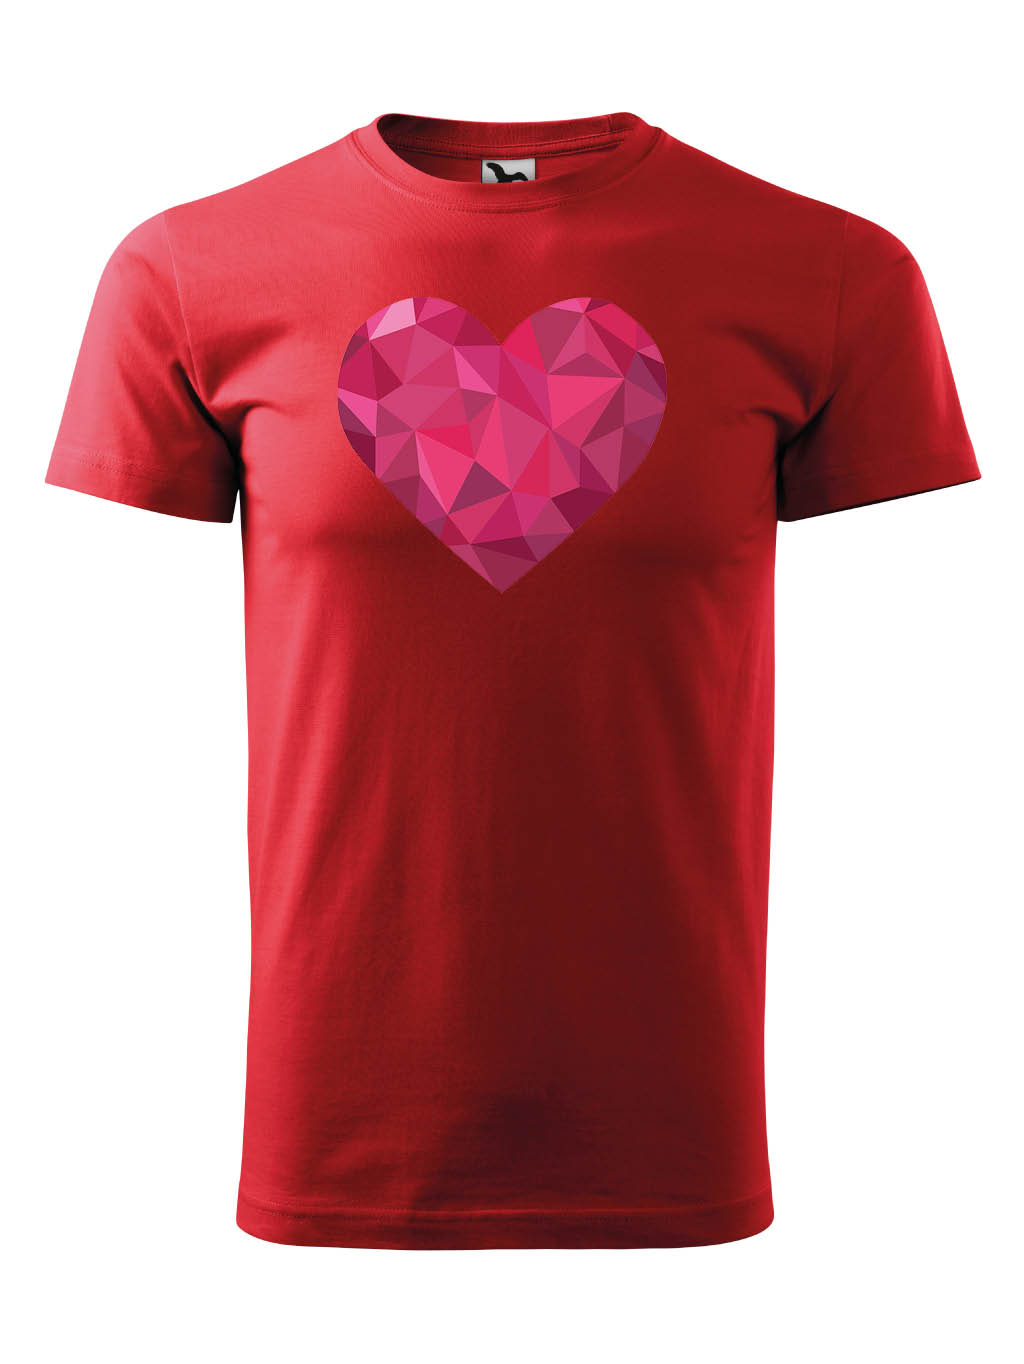 Praďoch Tričko s potiskem Srdce 2 Pohlaví: Dětské tričko, Barva textilu: Červená